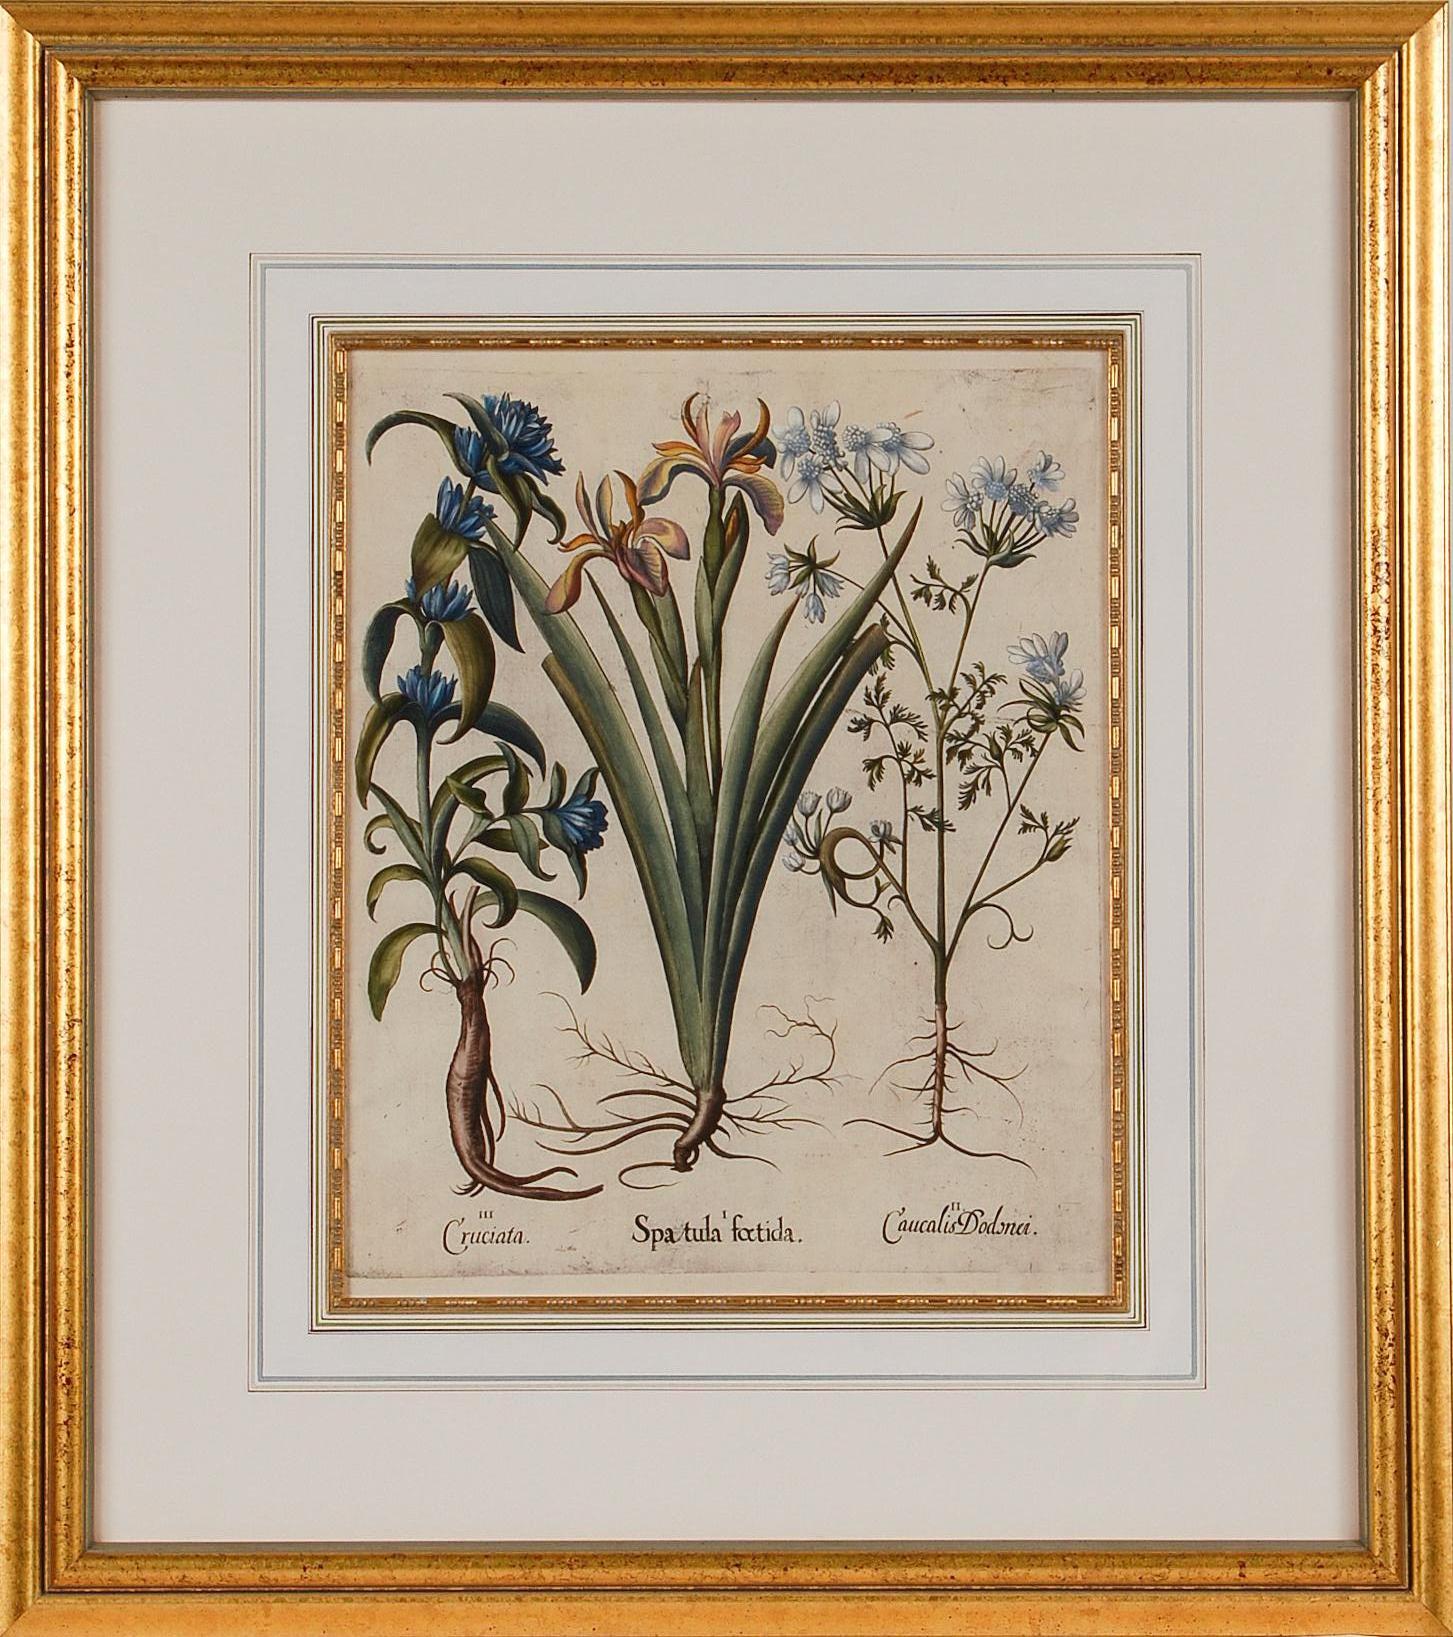 Iris Flowering & Other Botanicals : Encadrement 17th C. Besler Gravure colorée à la main